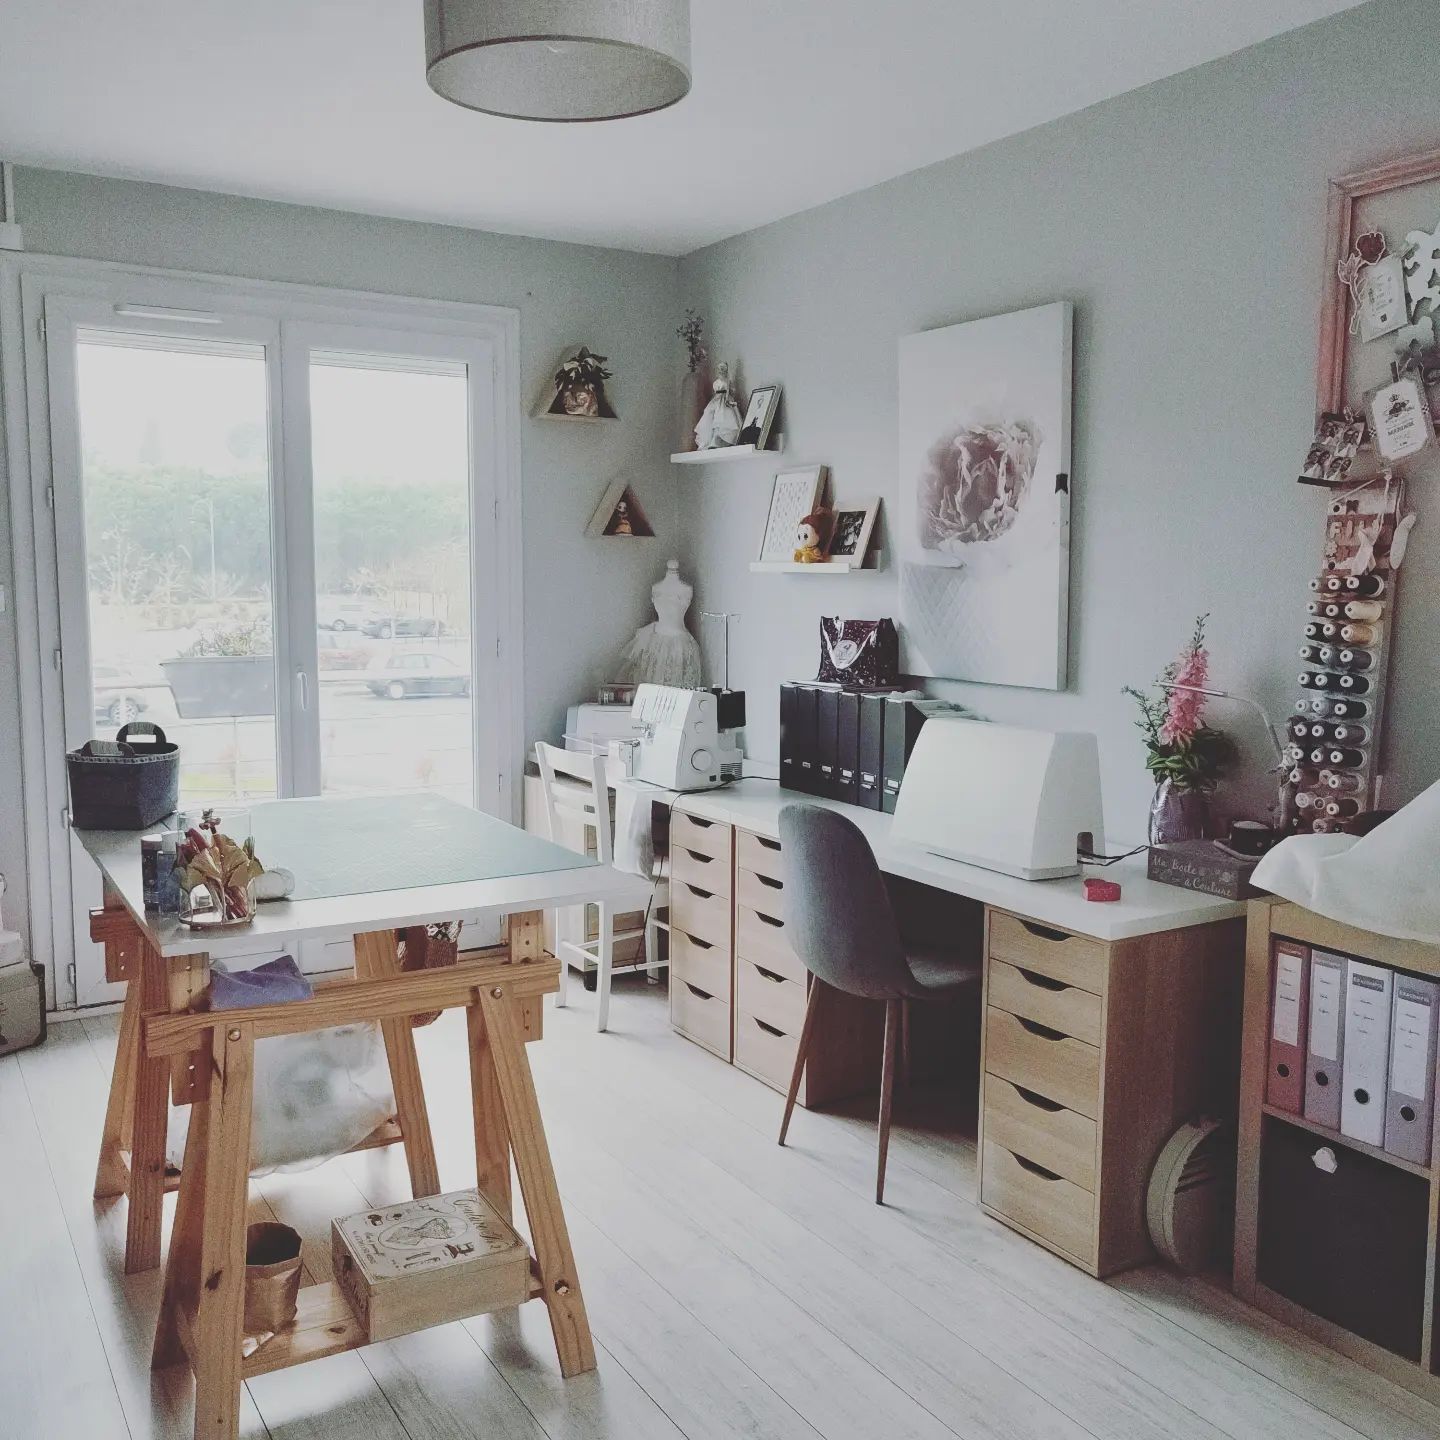 --- mon atelier ---

Après la peinture, le montage des meubles #ikea, la réorganisation de tout mon "petit bazar" le voilà 🥰 #monatelier tout frais, tout beau et tout rangé 🤗

----- y a plus qu'à ---- comme on dit 😉

#peinturetollens #ikeaalex #pfaff #sewingworkshop #monpetitcoin #sew #enroute